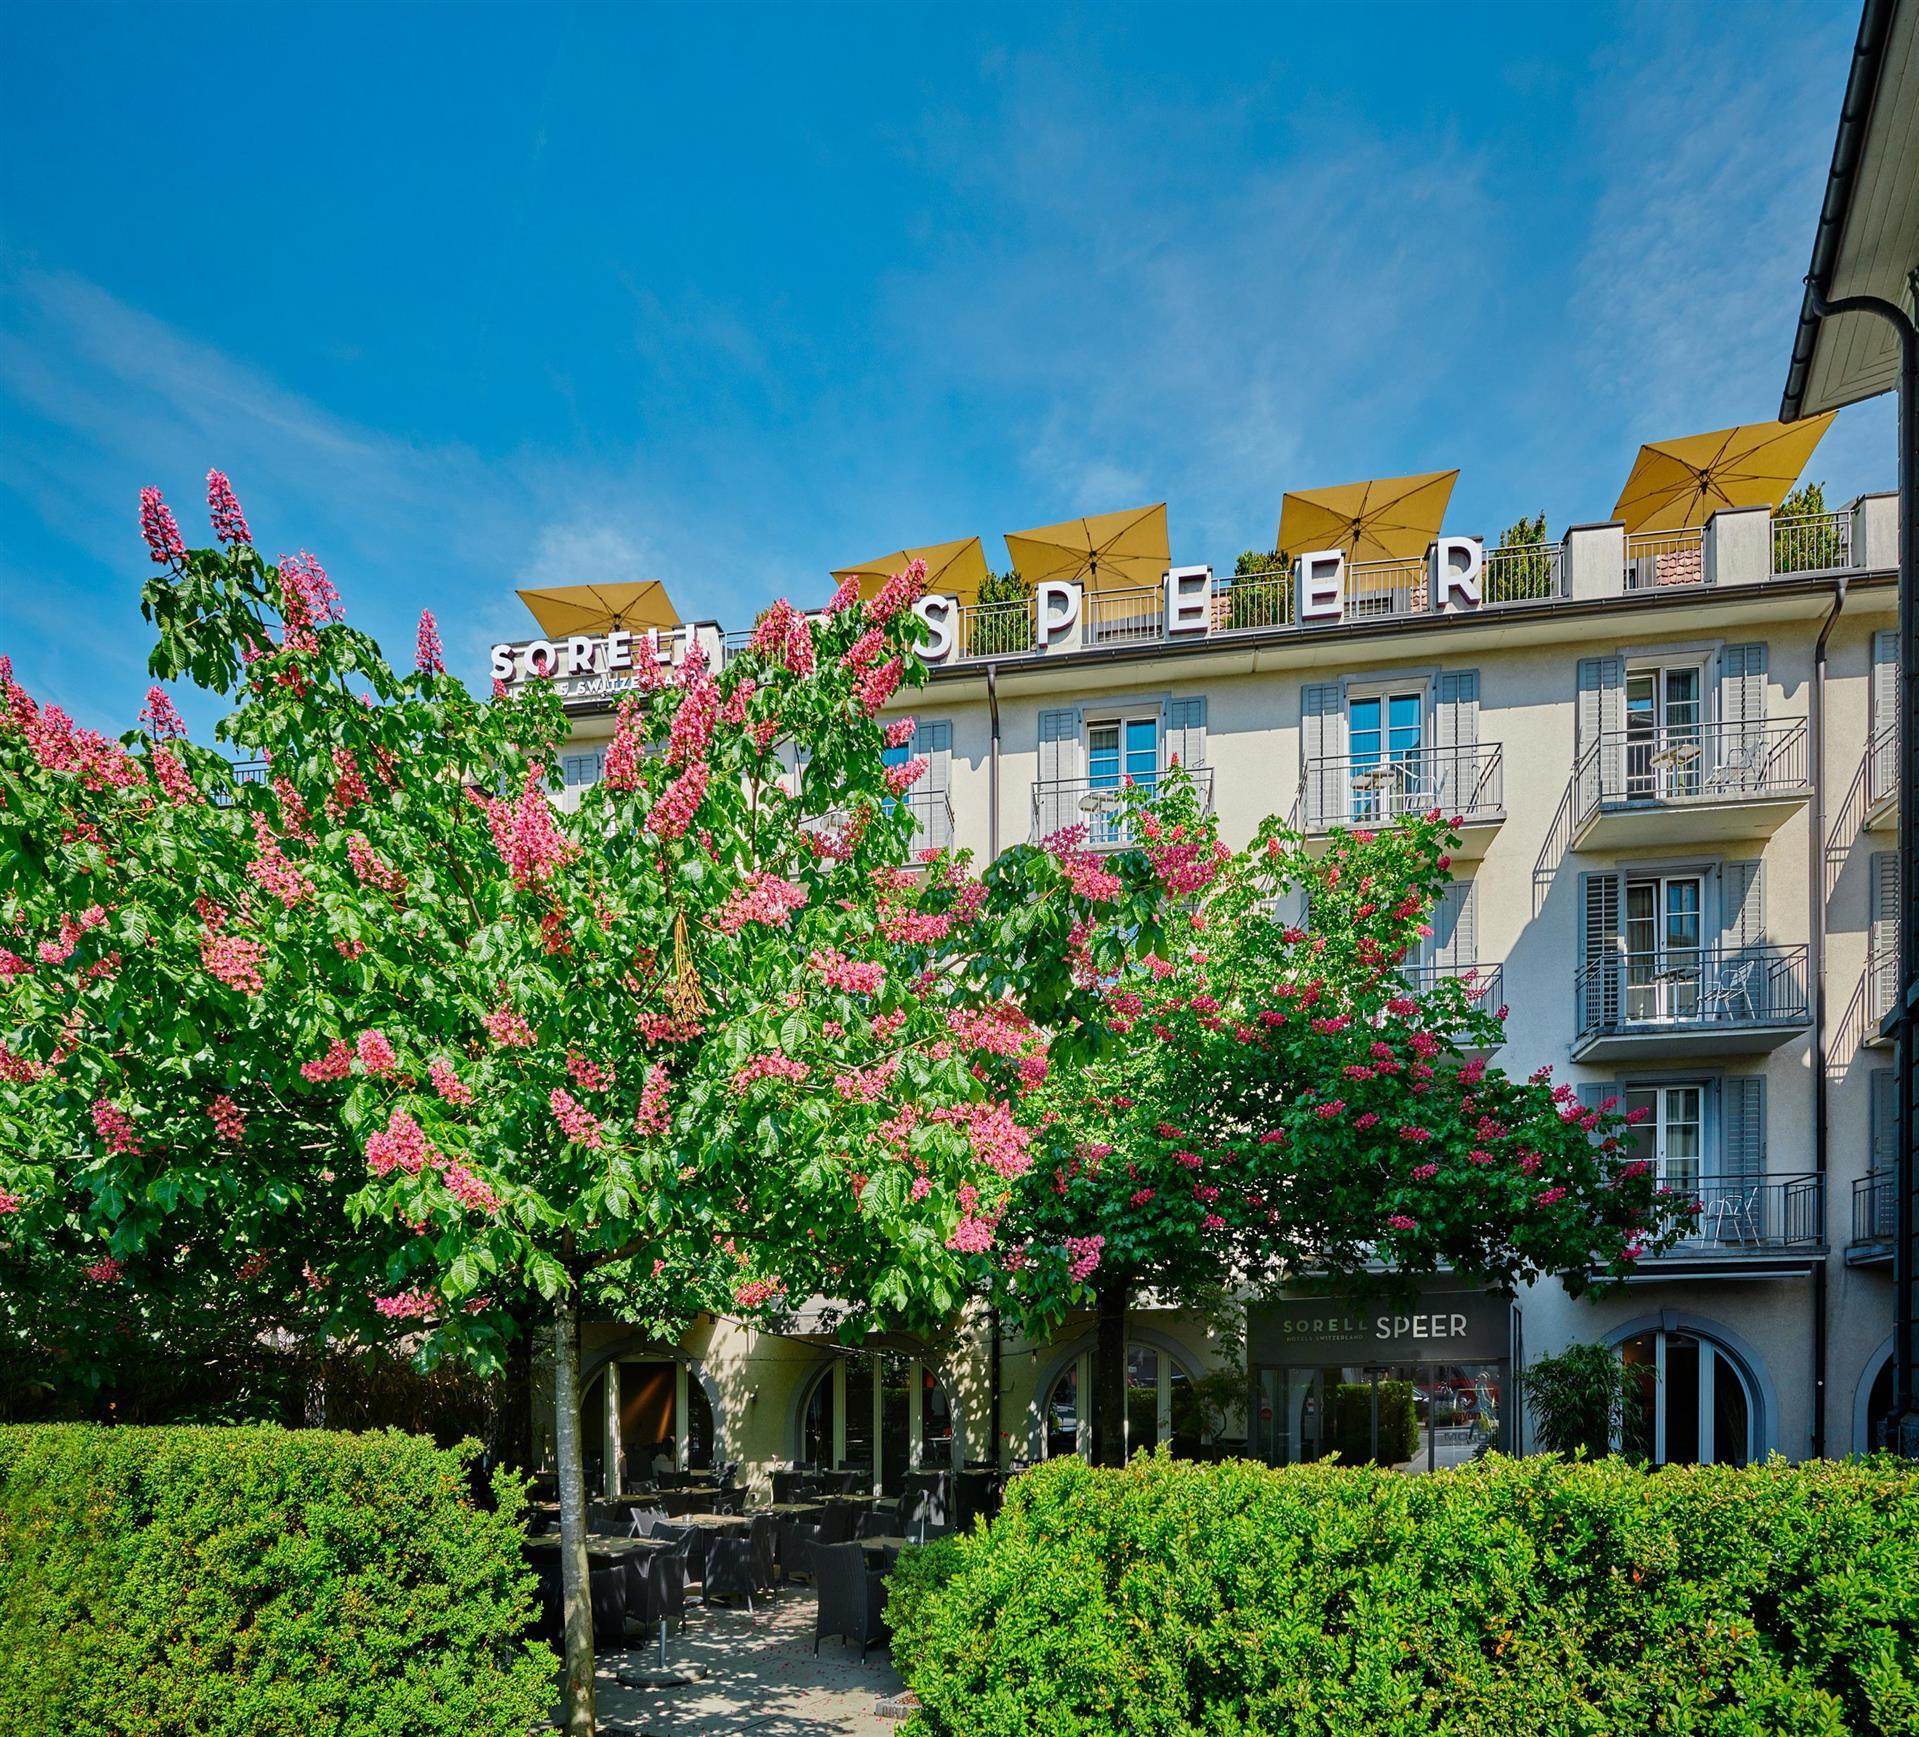 Sorell Hotel Speer in Rapperswil-Jona, CH